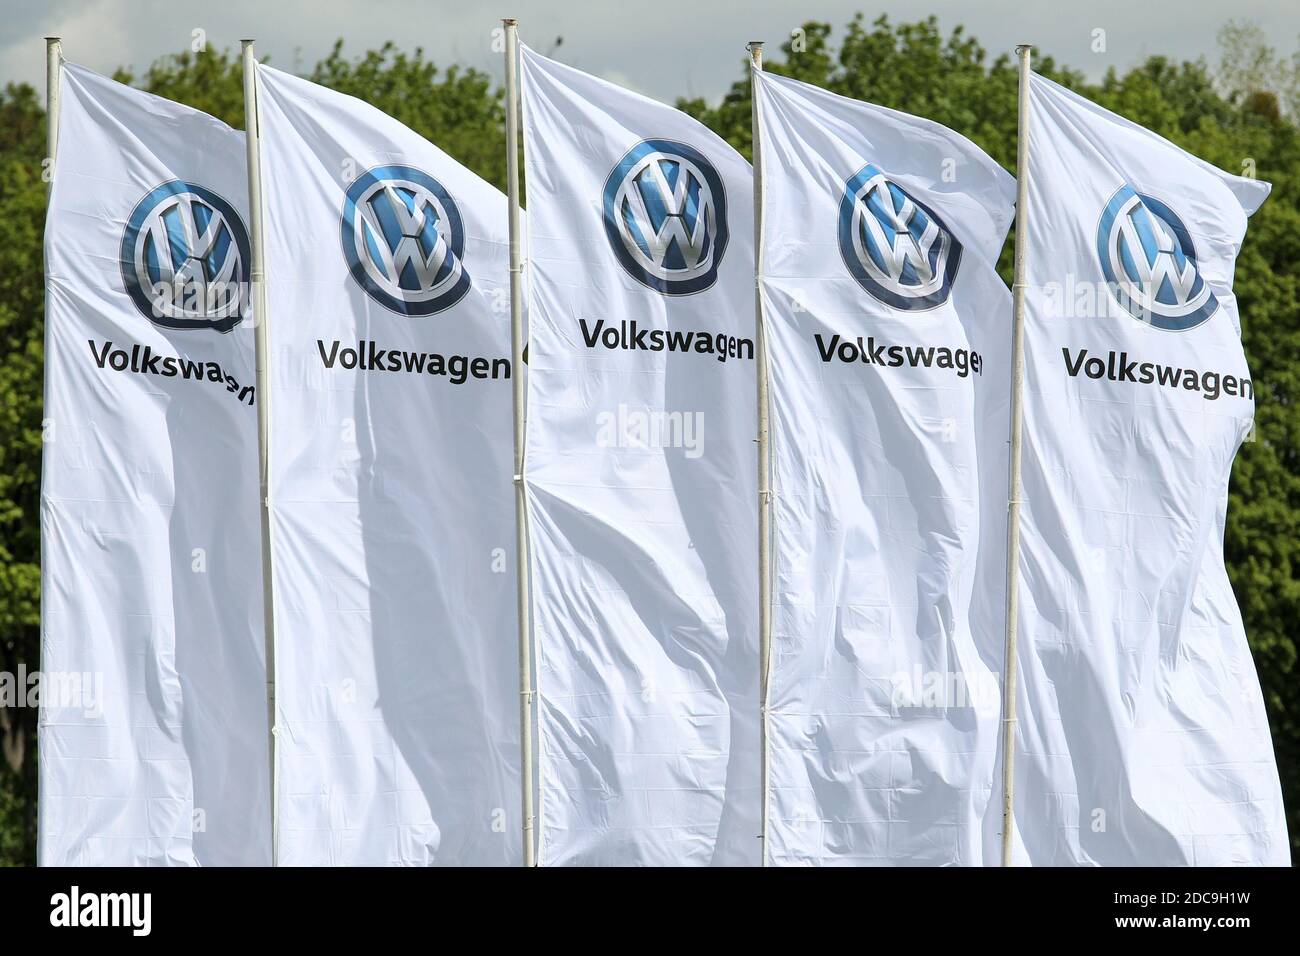 05.05.2019, Dresden, Sachsen, Deutschland - Flaggen des Automobilherstellers Volkswagen. 00S190505D542CAROEX.JPG [MODELLVERSION: NICHT ZUTREFFEND, EIGENSCHAFTSRELE Stockfoto